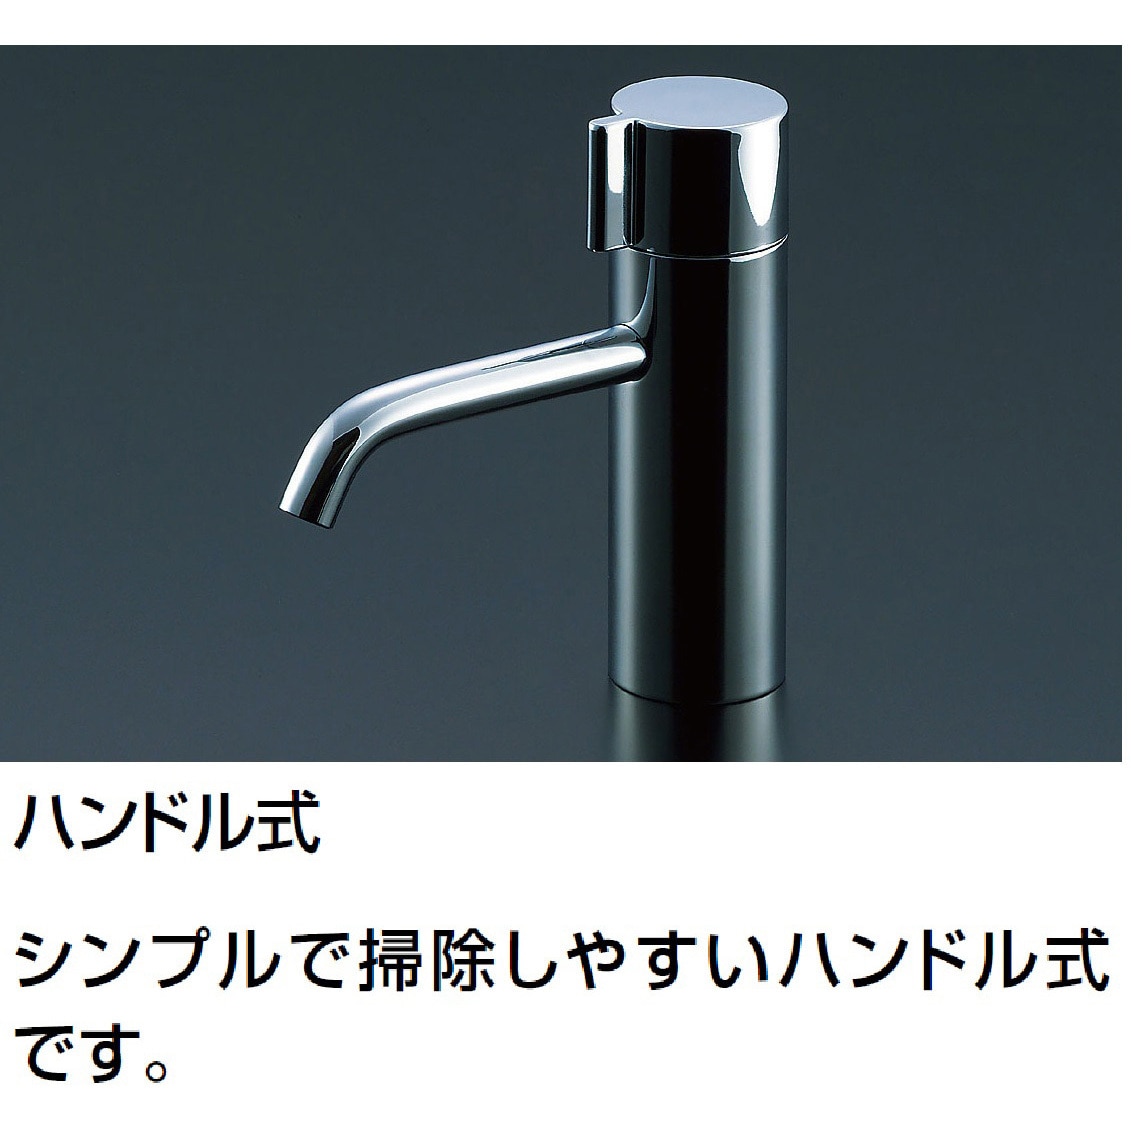 壁付手洗器 (奥行200mm)水石けん入れ付 ハンドル水栓タイプ